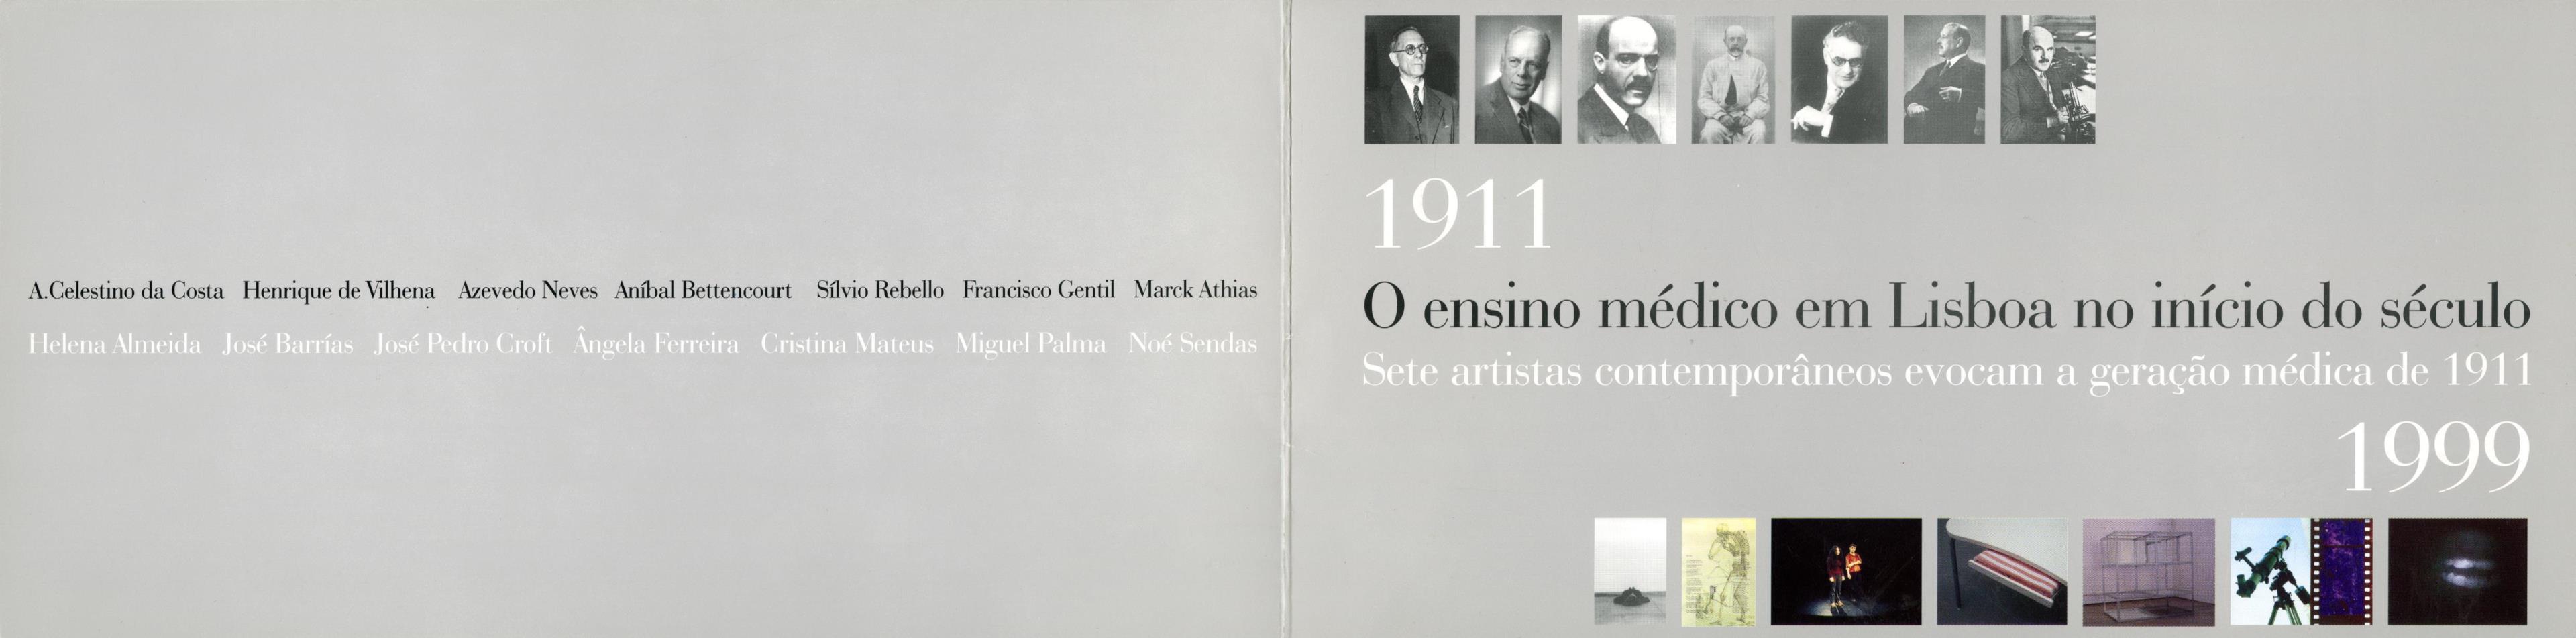 1911 – 1999: O Ensino Médico em Lisboa no Início do Século. Sete artistas contemporâneos evocam a geração médica de 1911